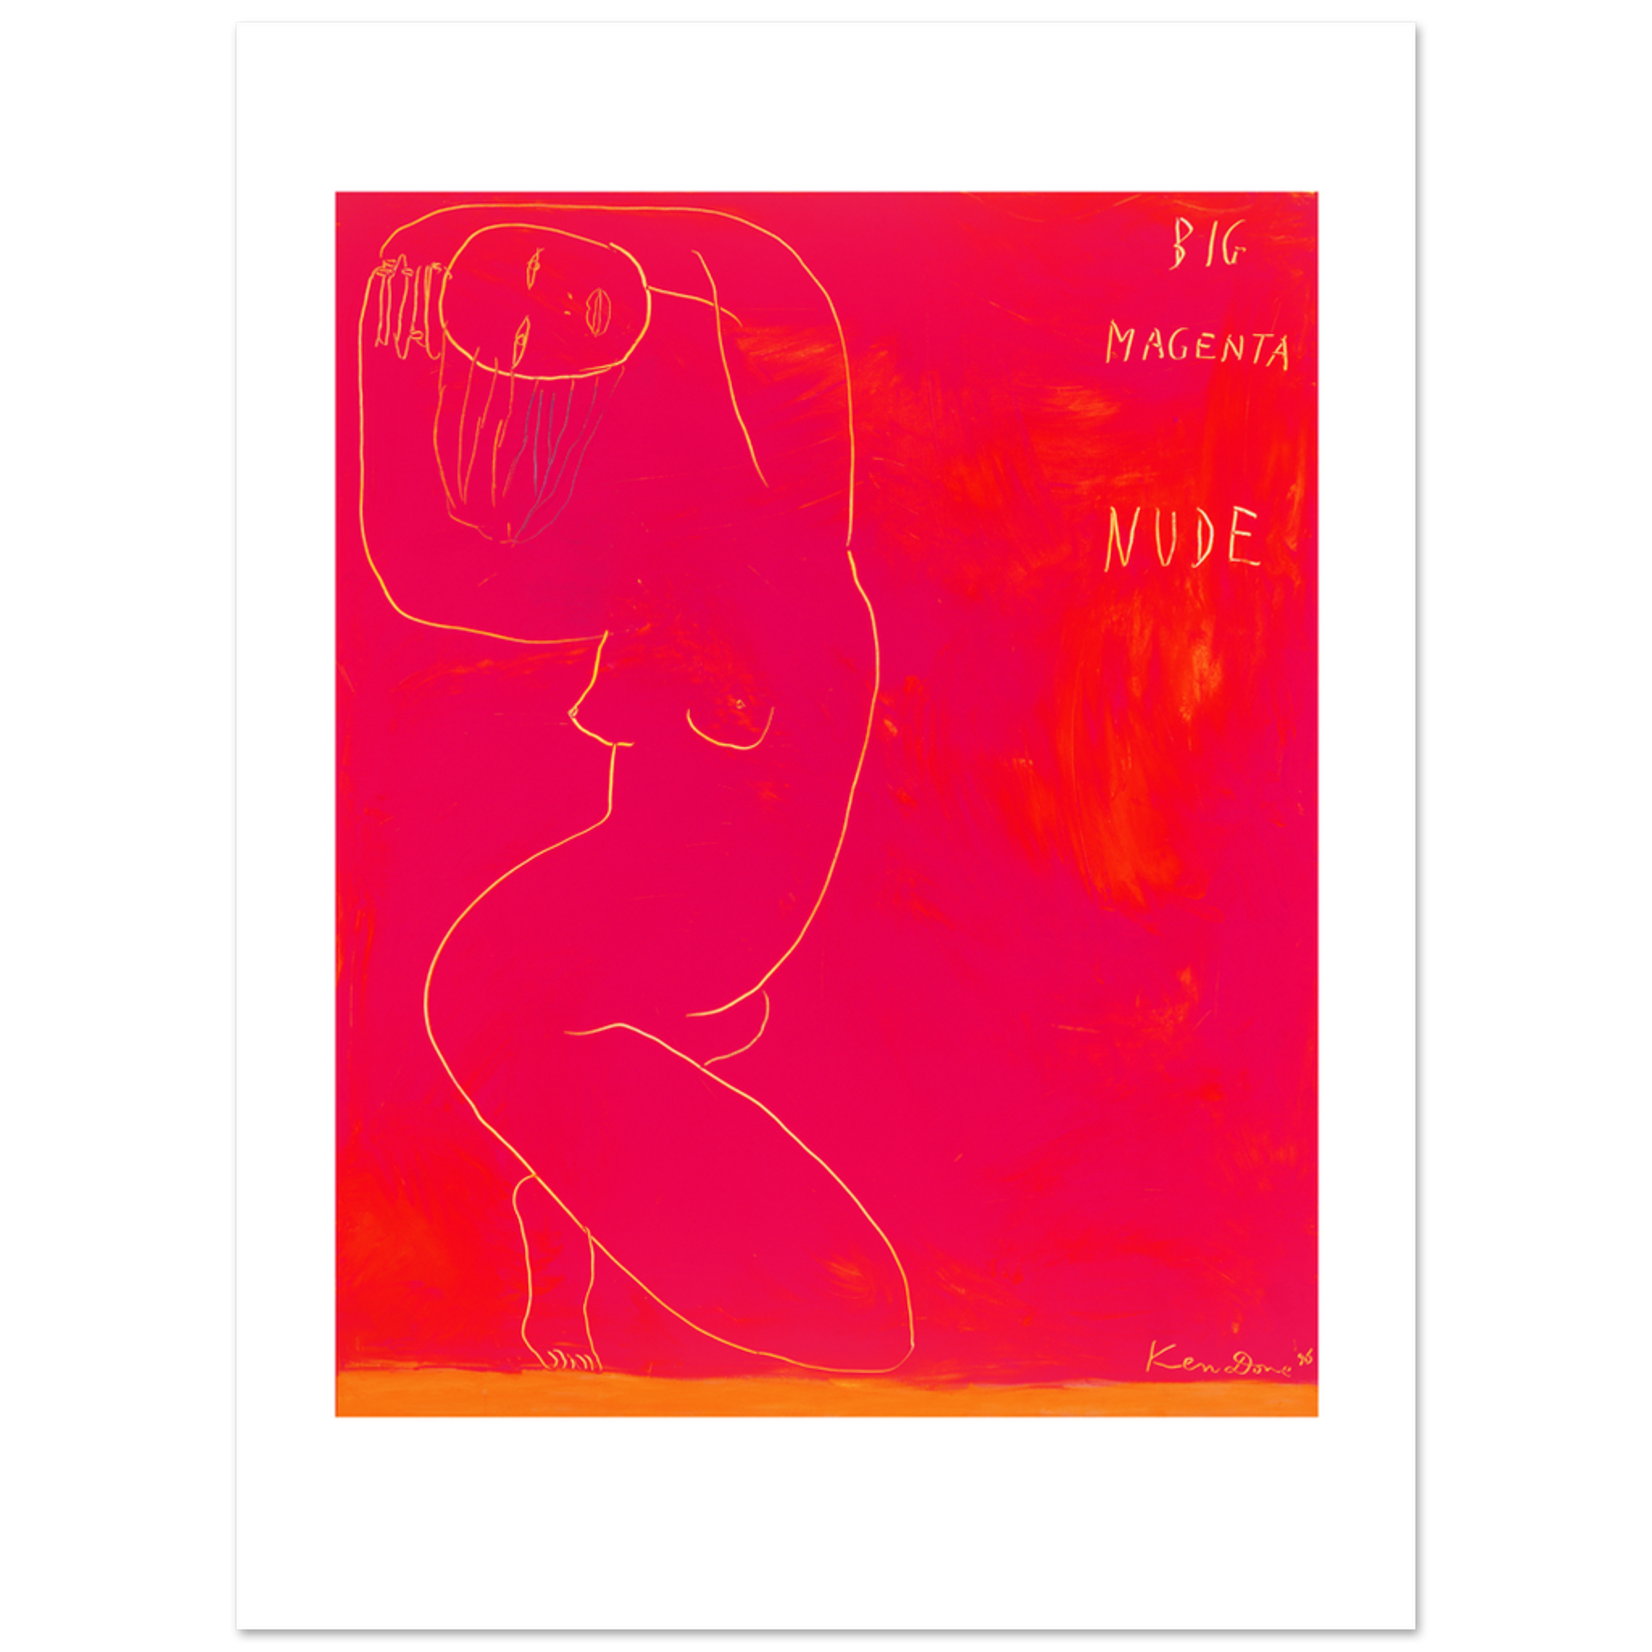 Limited Edition Prints Big magenta nude, 1996